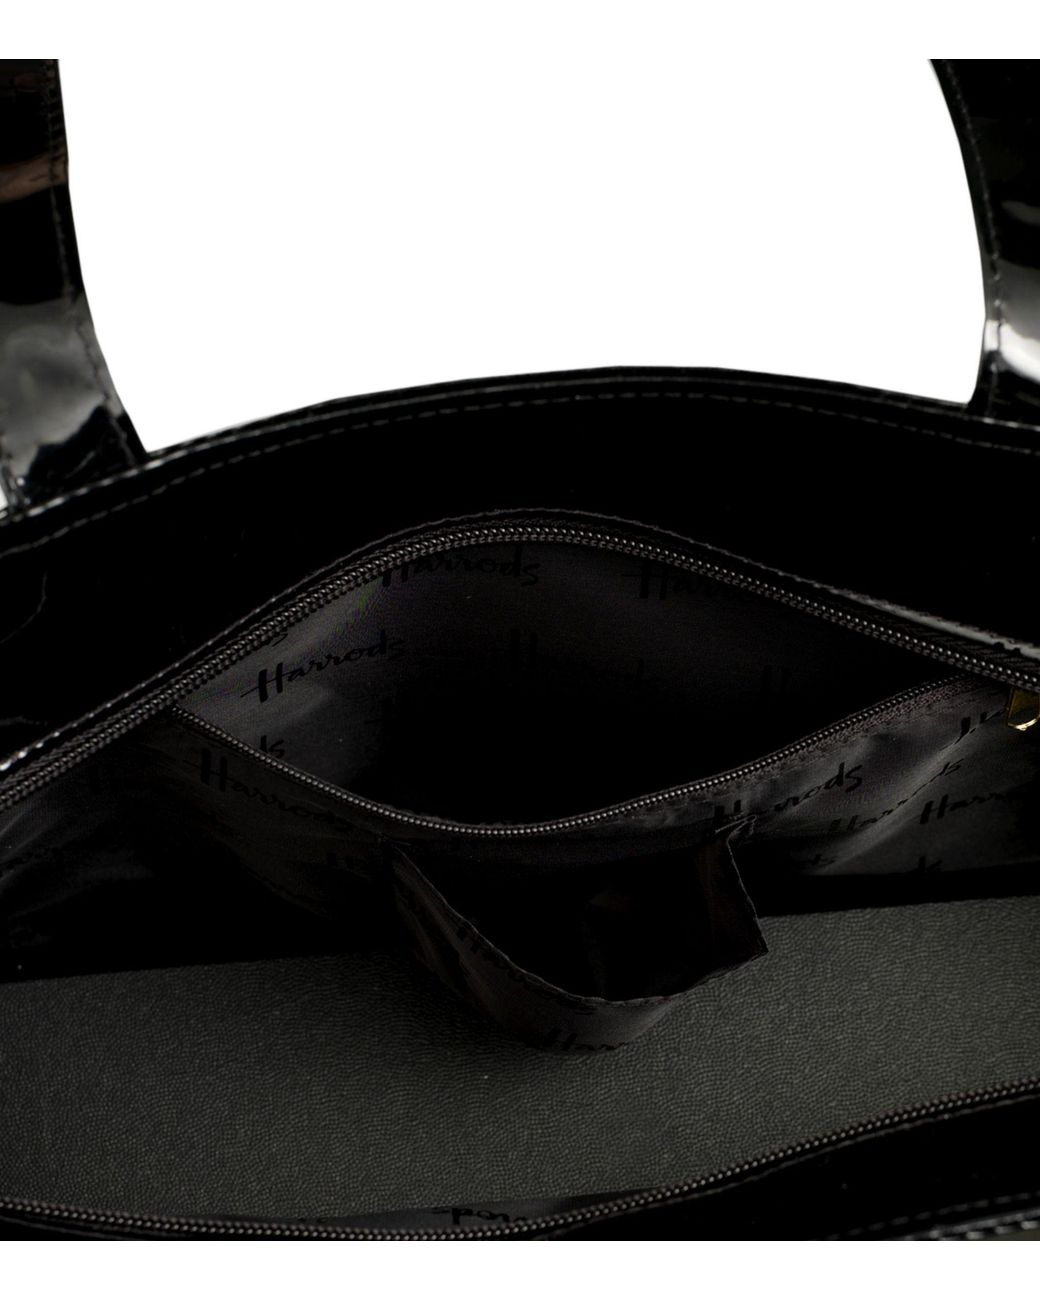 Harrods Signature Logo large Shopper Bag   Fermeture avec bouton magnétique et poche intérieure avec fermeture éclair   Sac à main noir en PVC avec logo or   Gousset Porte Té 